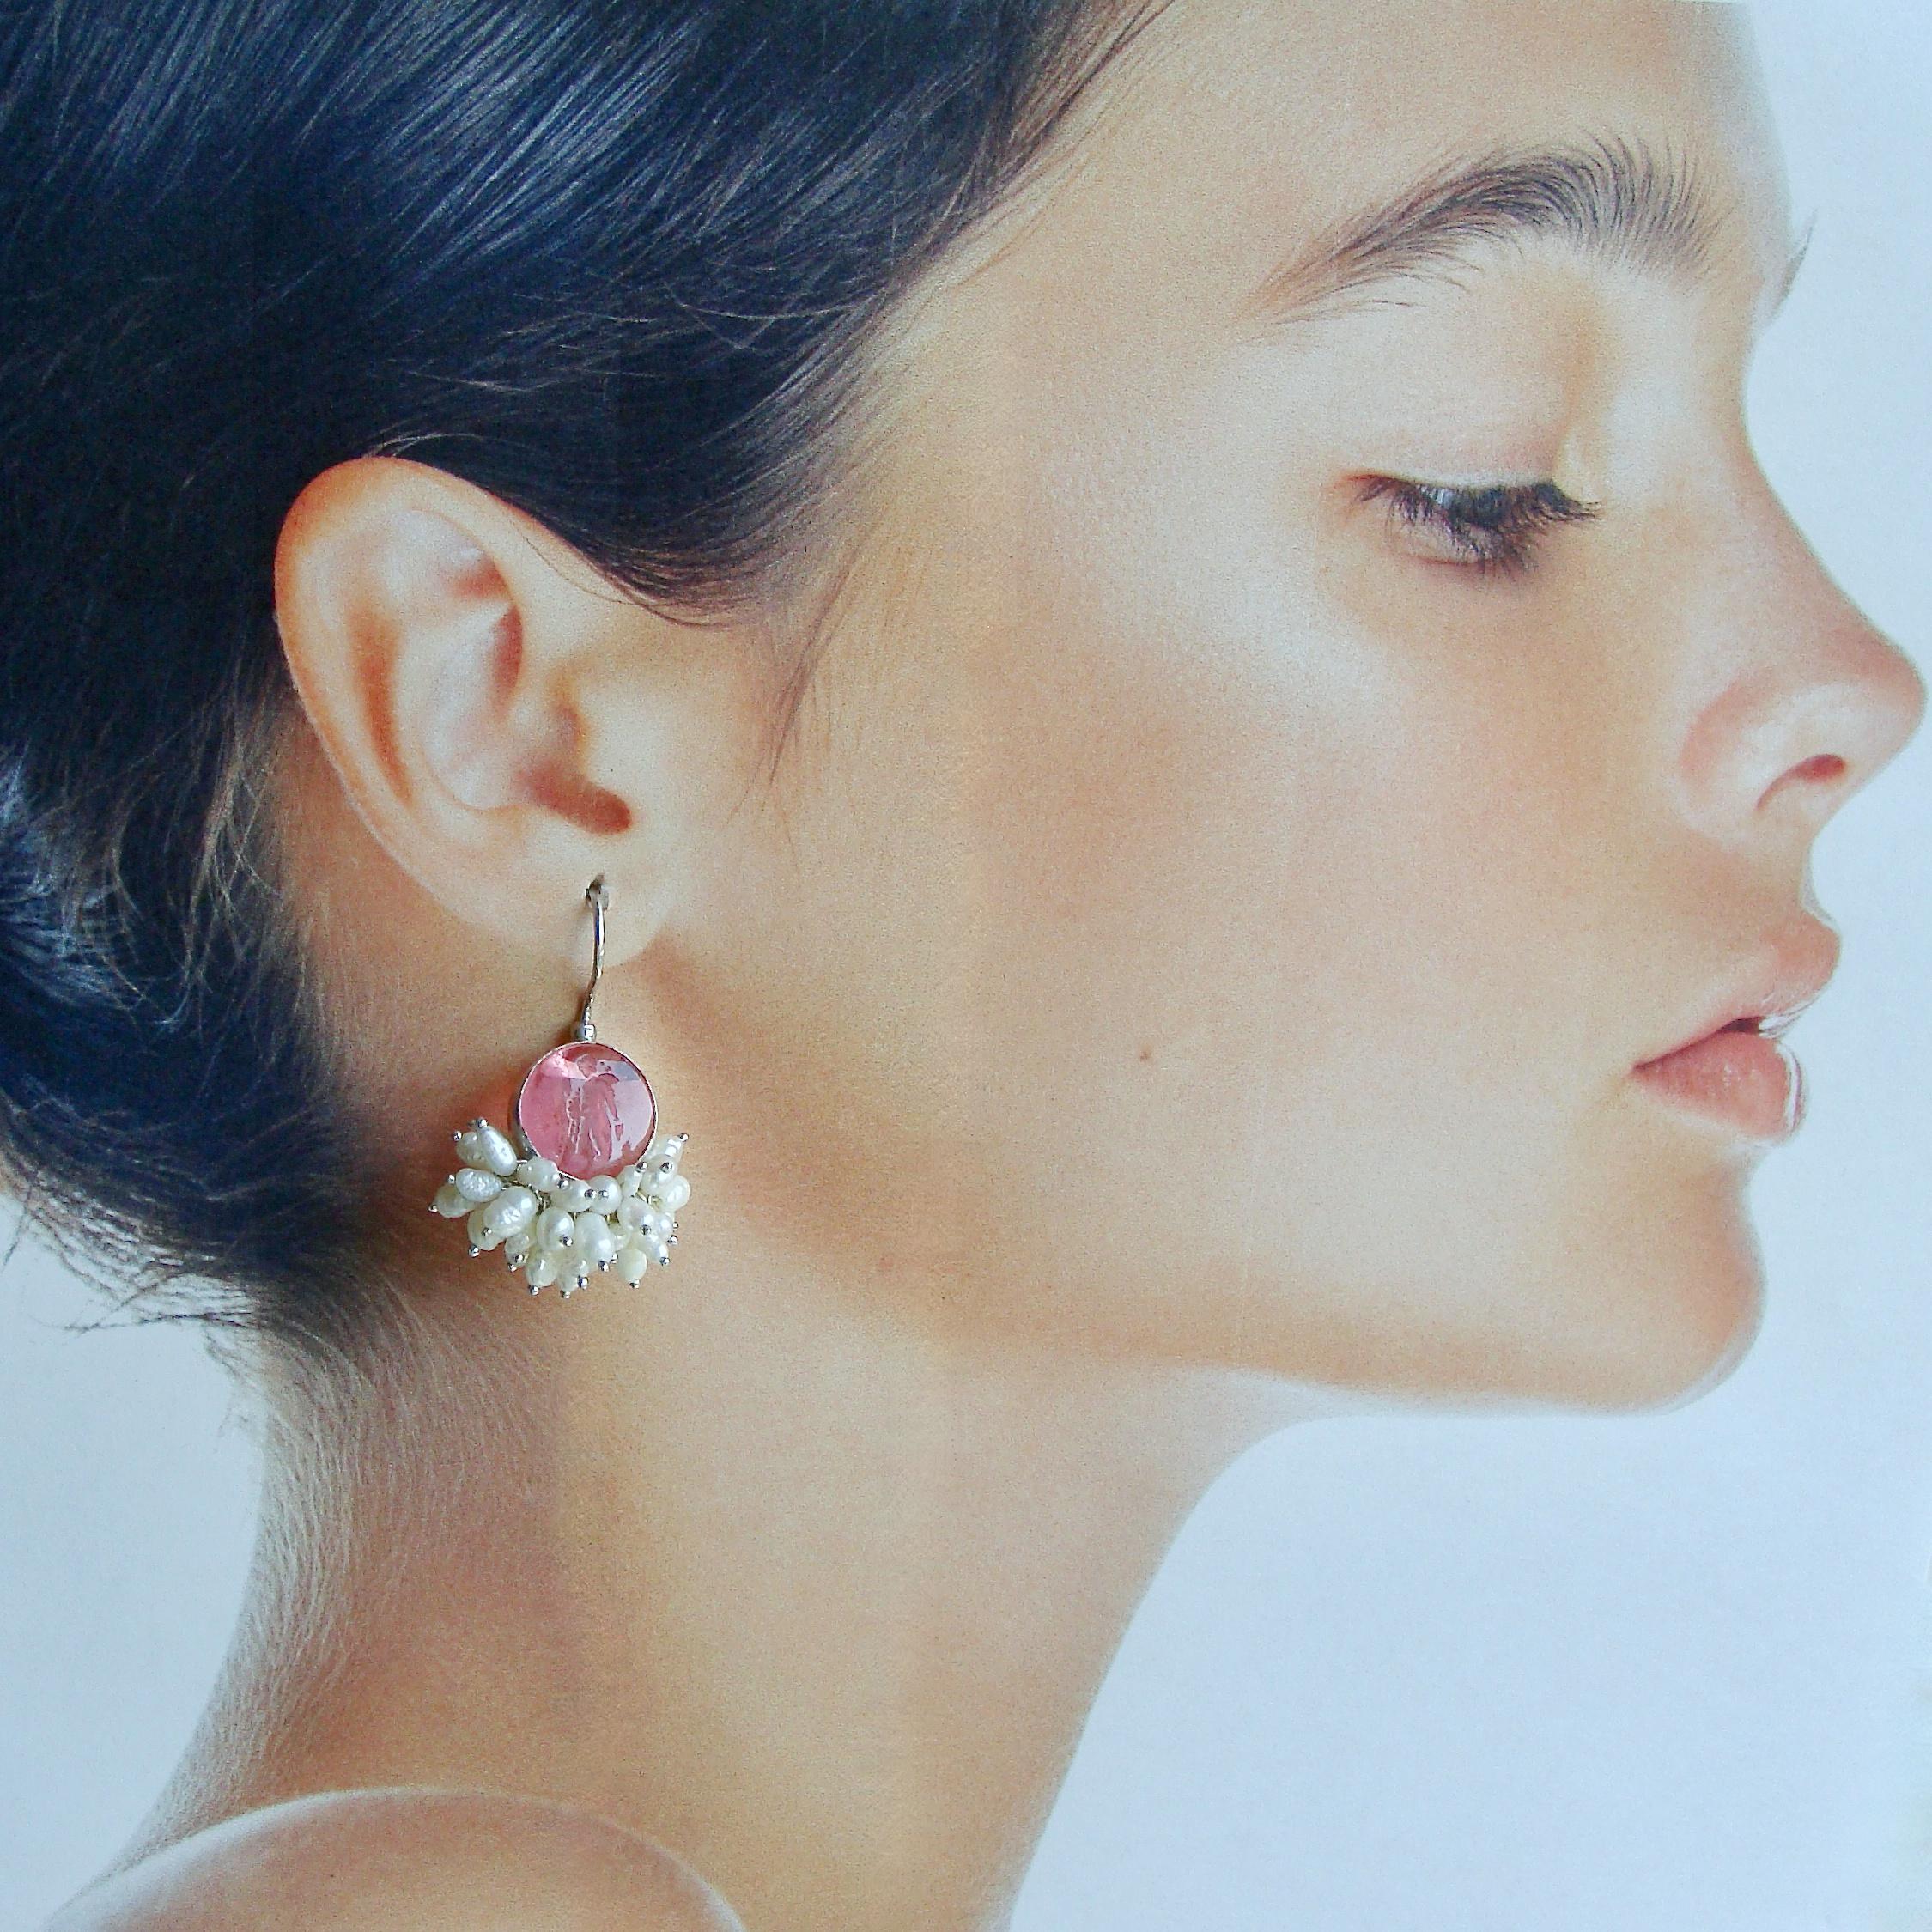 Oval Cut Pink Intaglio Earrings With Pearls Clusters - Mattera III Earrings